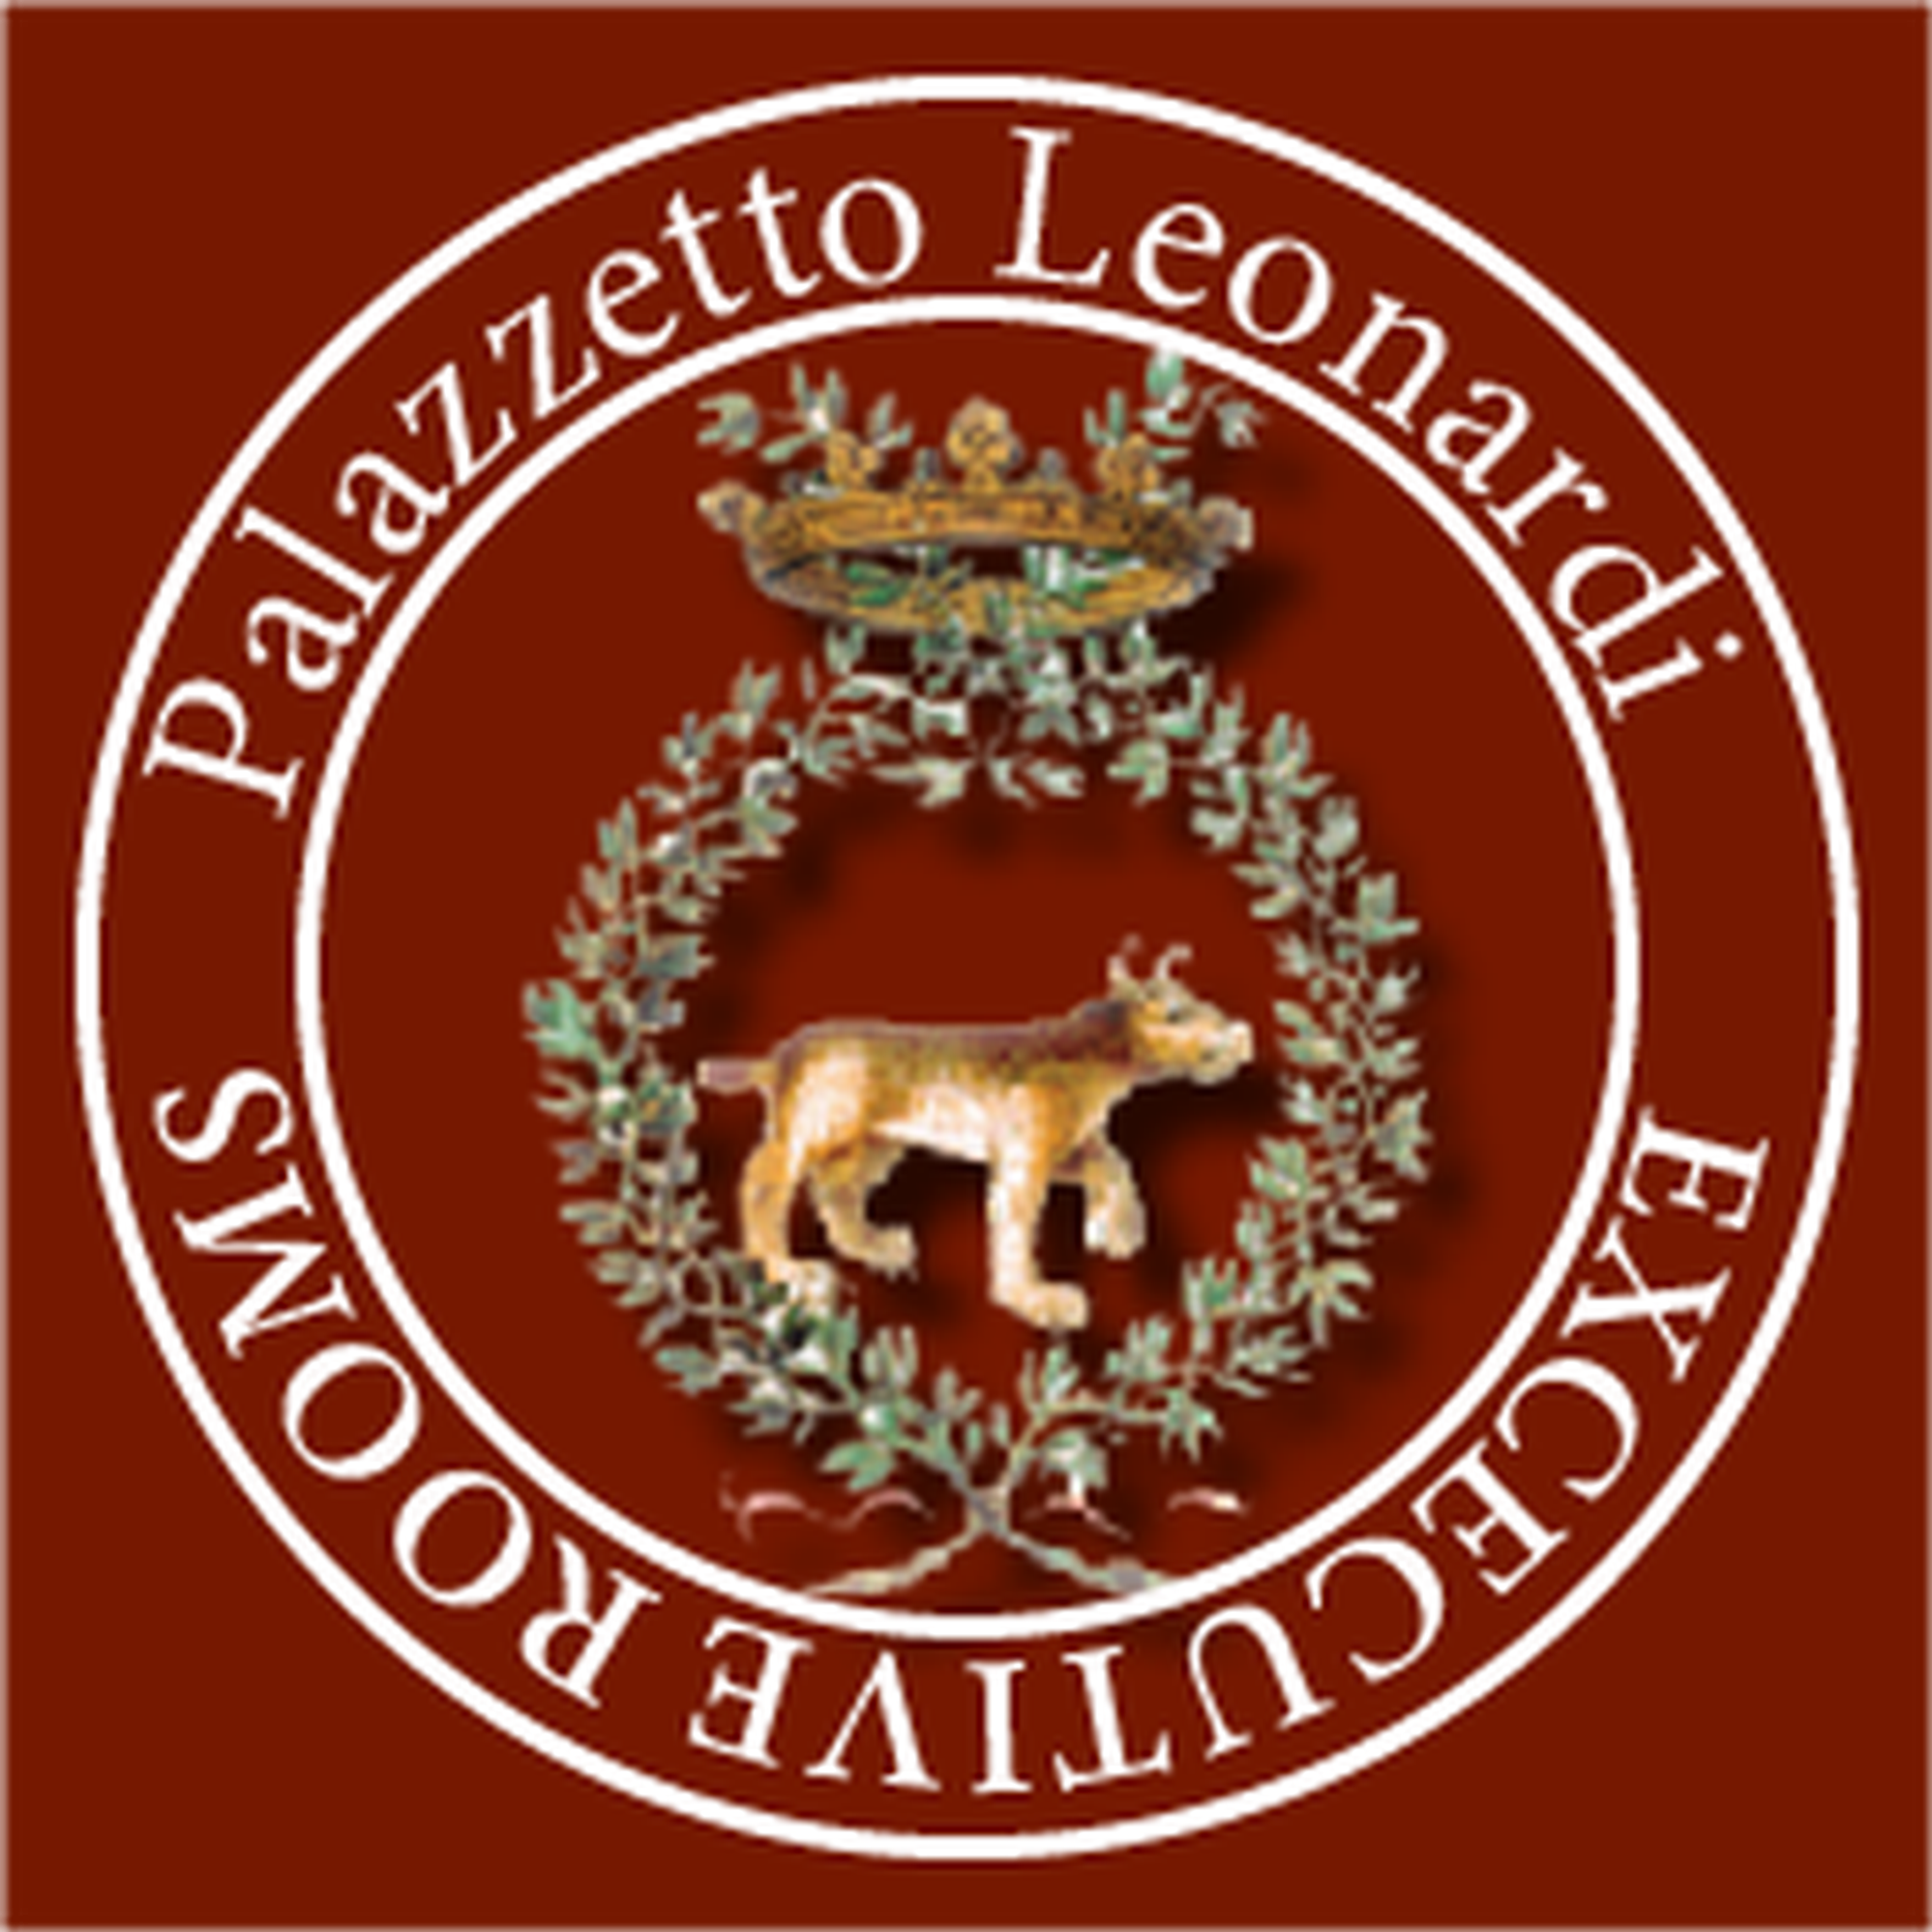 Logo Palazzetto Leonardi - Bed & Breakfast a San Polo dei Cavalieri - Ospitalità, cultura e storia